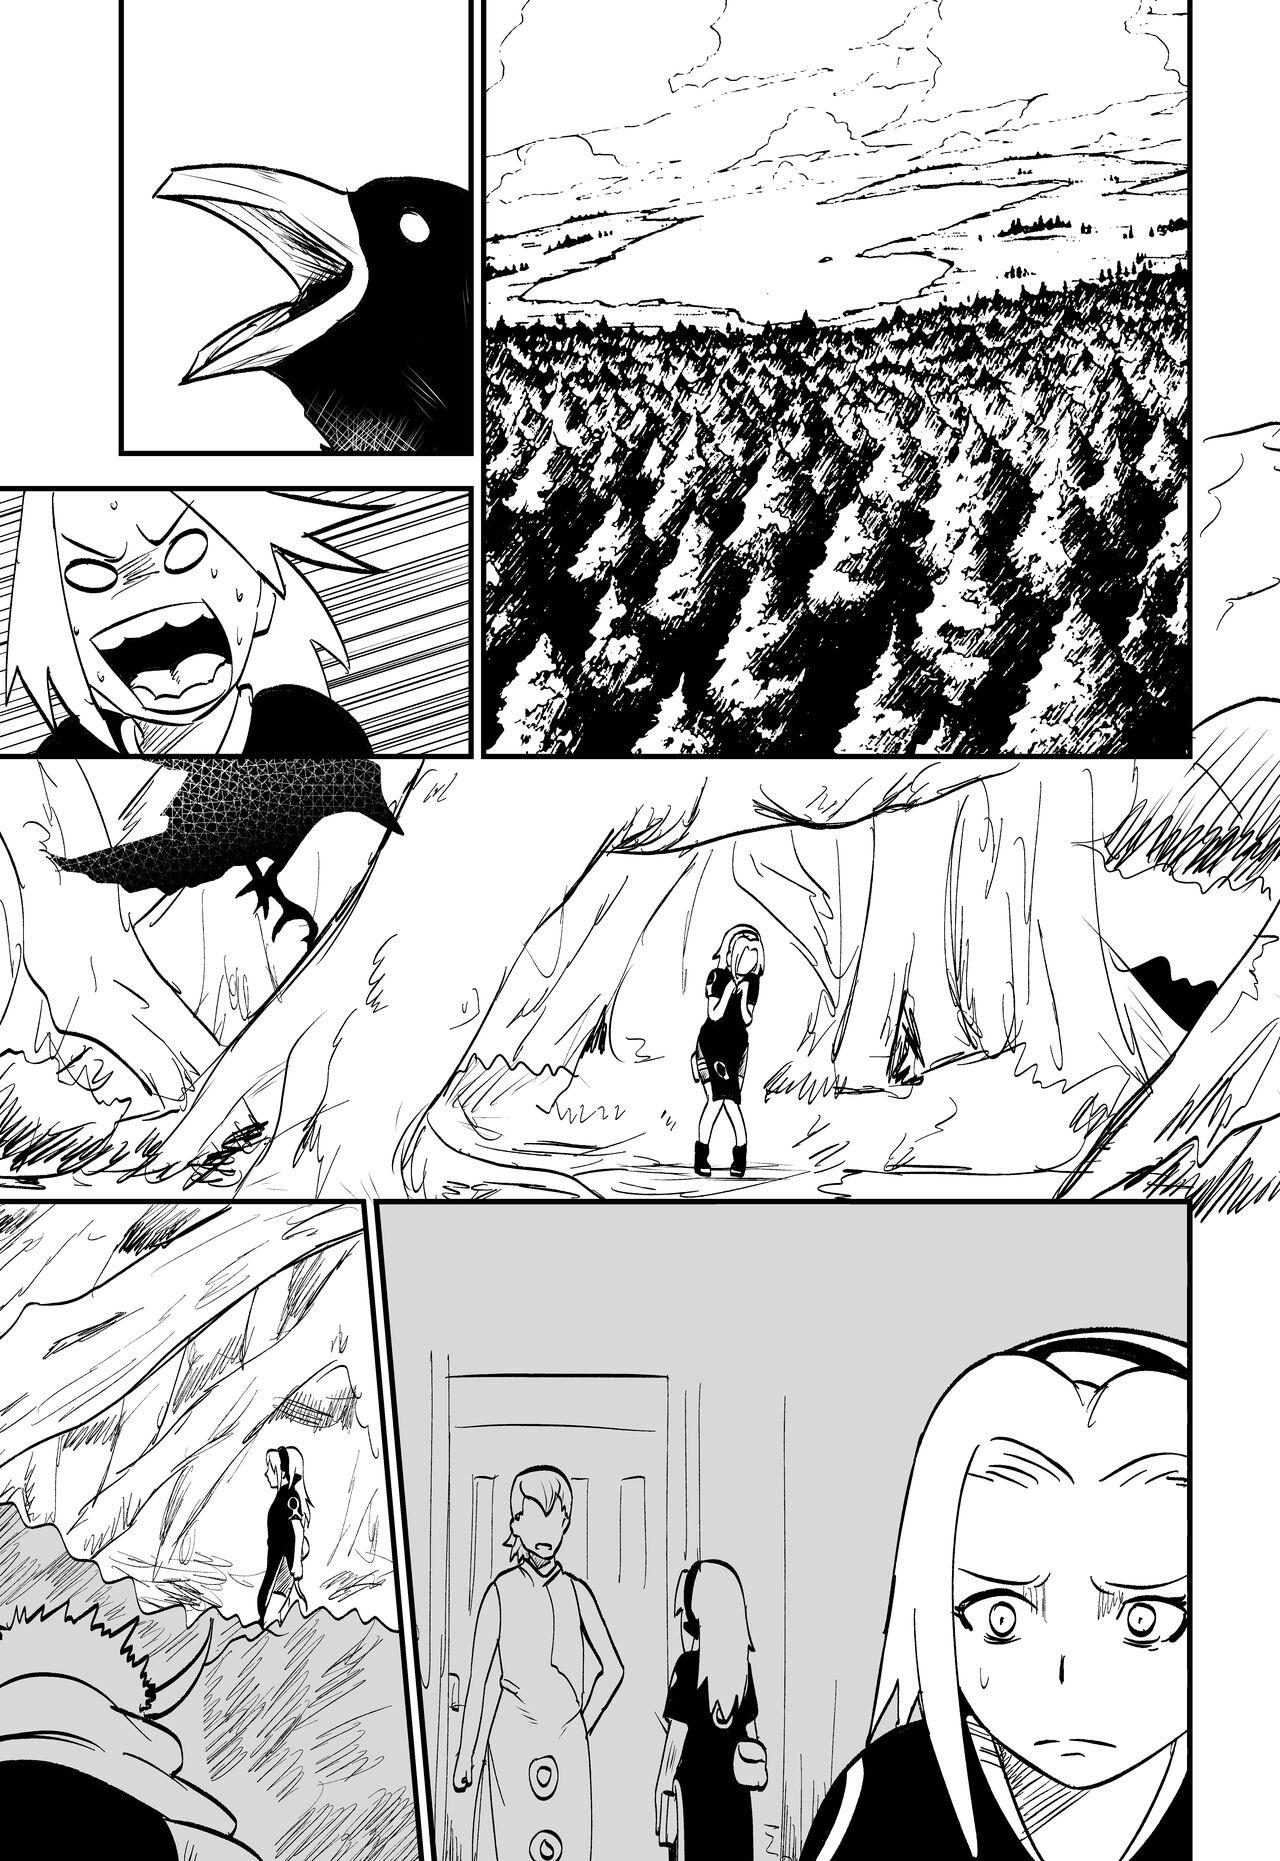 Masterbate 無限月読シリーズ サクラ - Naruto Licking - Page 1